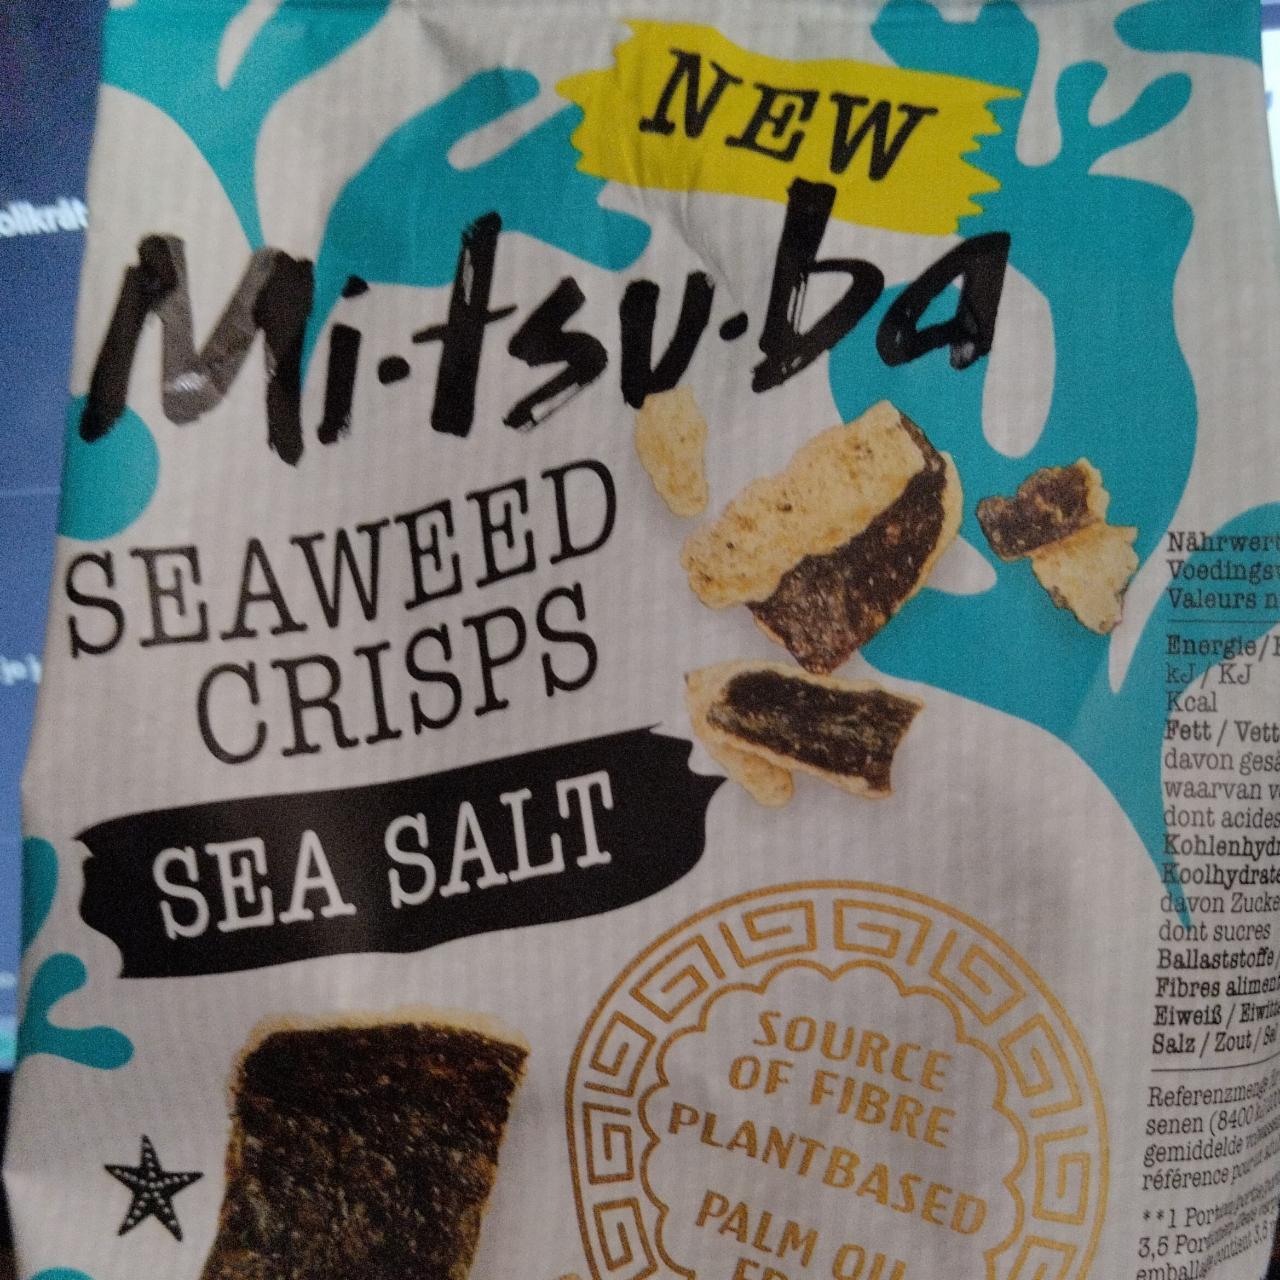 Fotografie - Seaweed Crisps Sea Salt Mitsuba